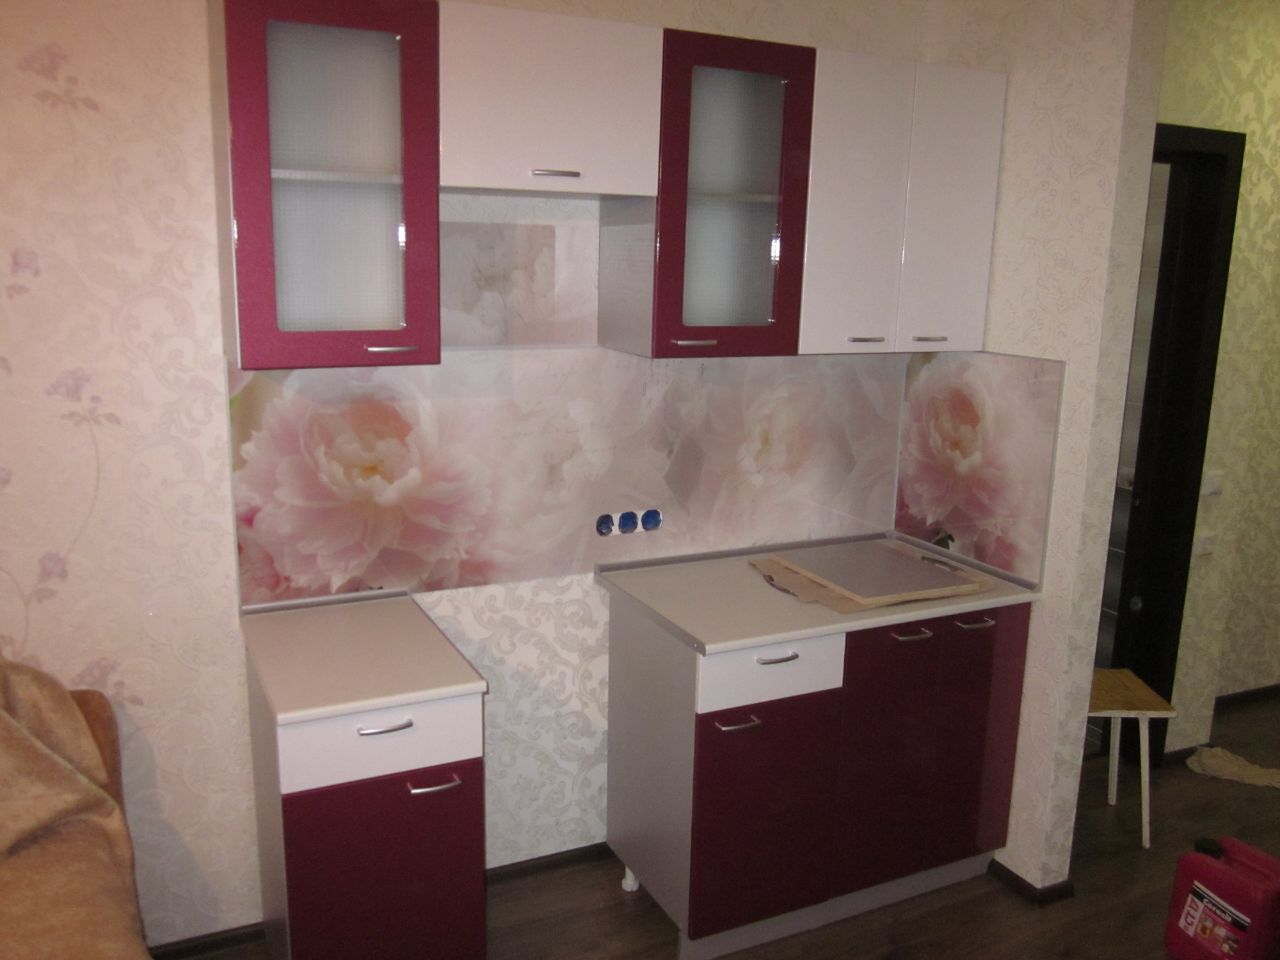 Фото. Кухня эконом класса. Цена 34 тыс рублей